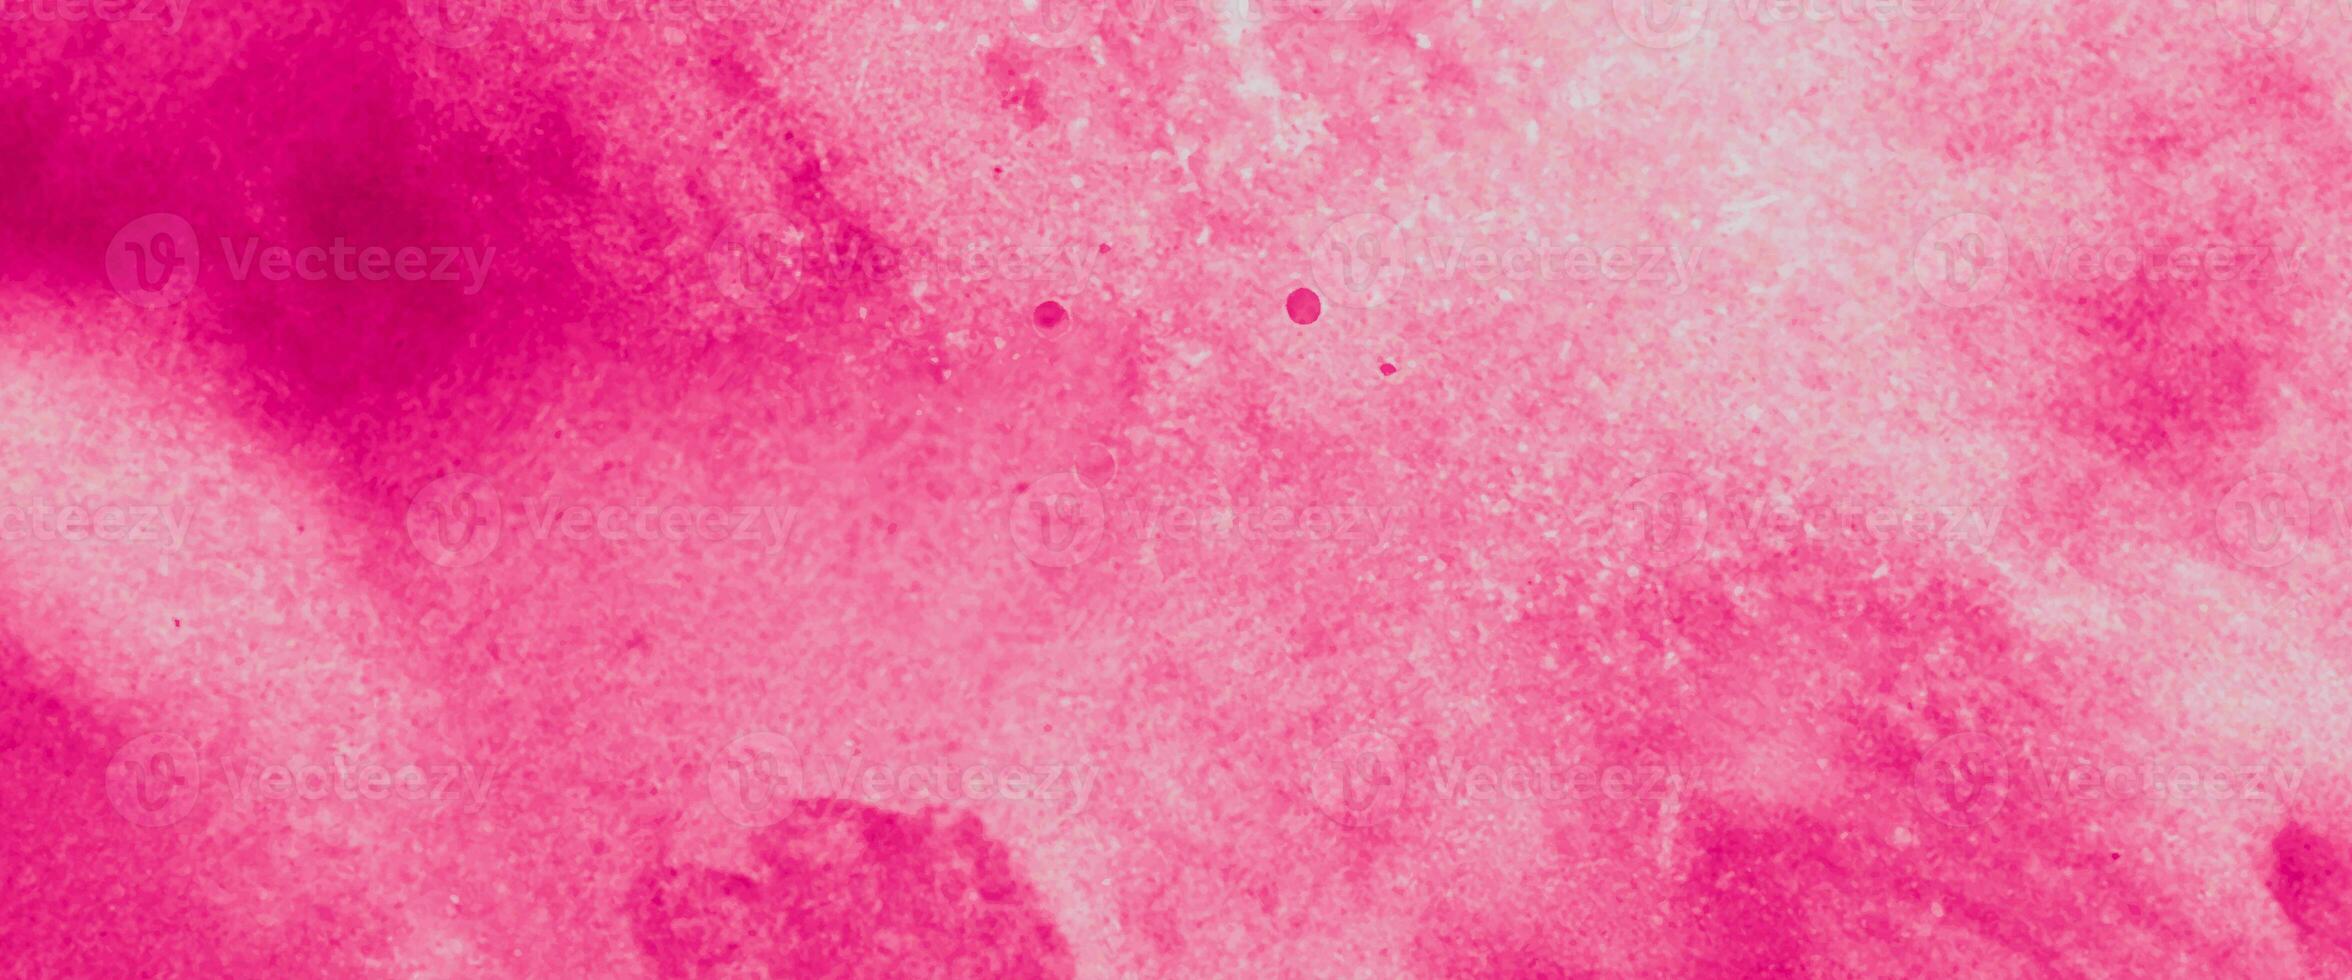 heiß Rosa Aquarell und Weiß Hintergrund. Rosa Hintergrund mit Aquarell. Licht Rosa Marmor Aquarell Hintergrund. Digital Zeichnung. foto